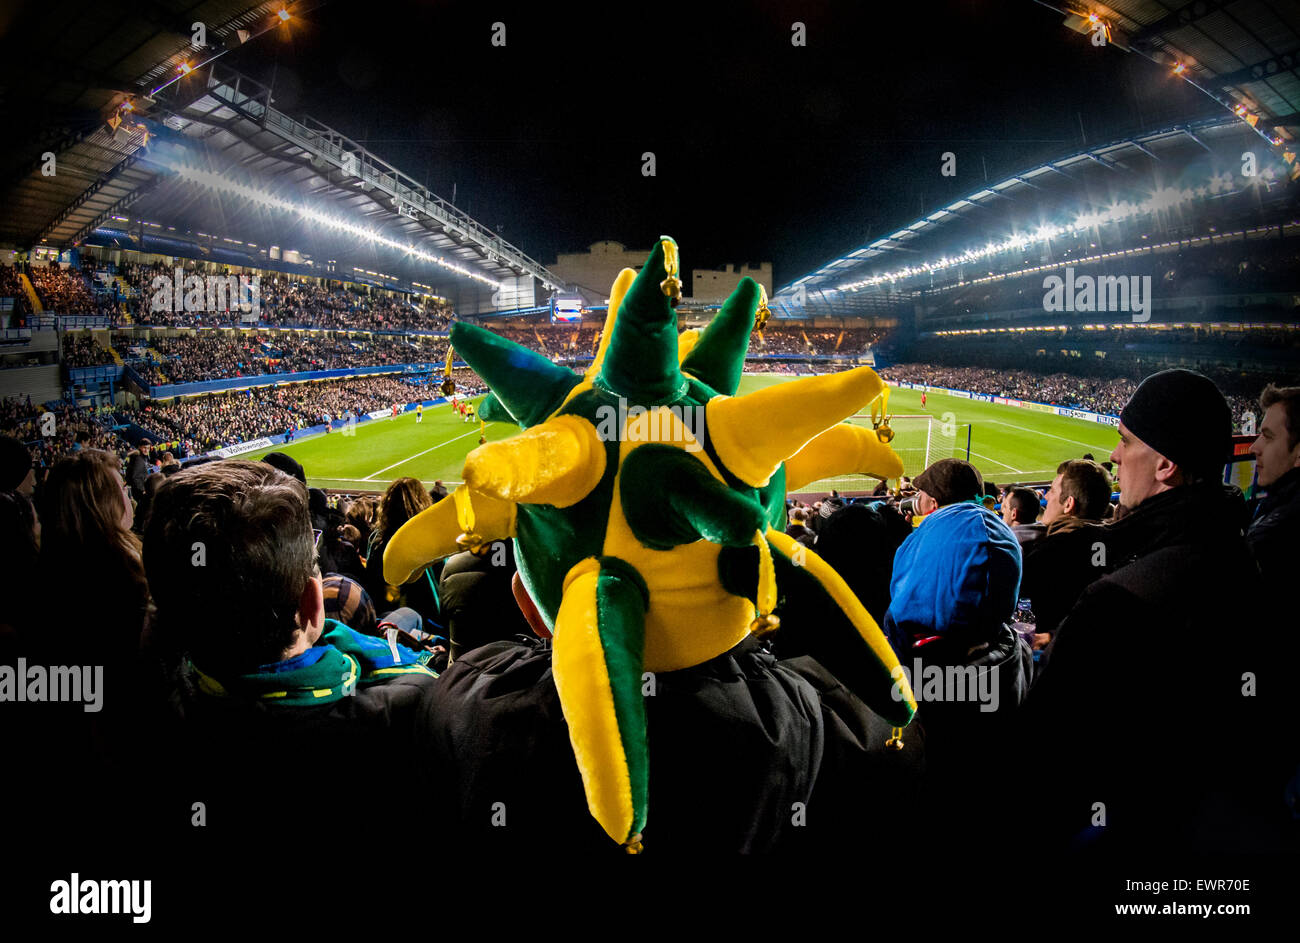 Un brasiliano appassionato di calcio in una partita internazionale contro l'Inghilterra completamente oscura la vista nella sua enorme verde e cappello giallo Foto Stock